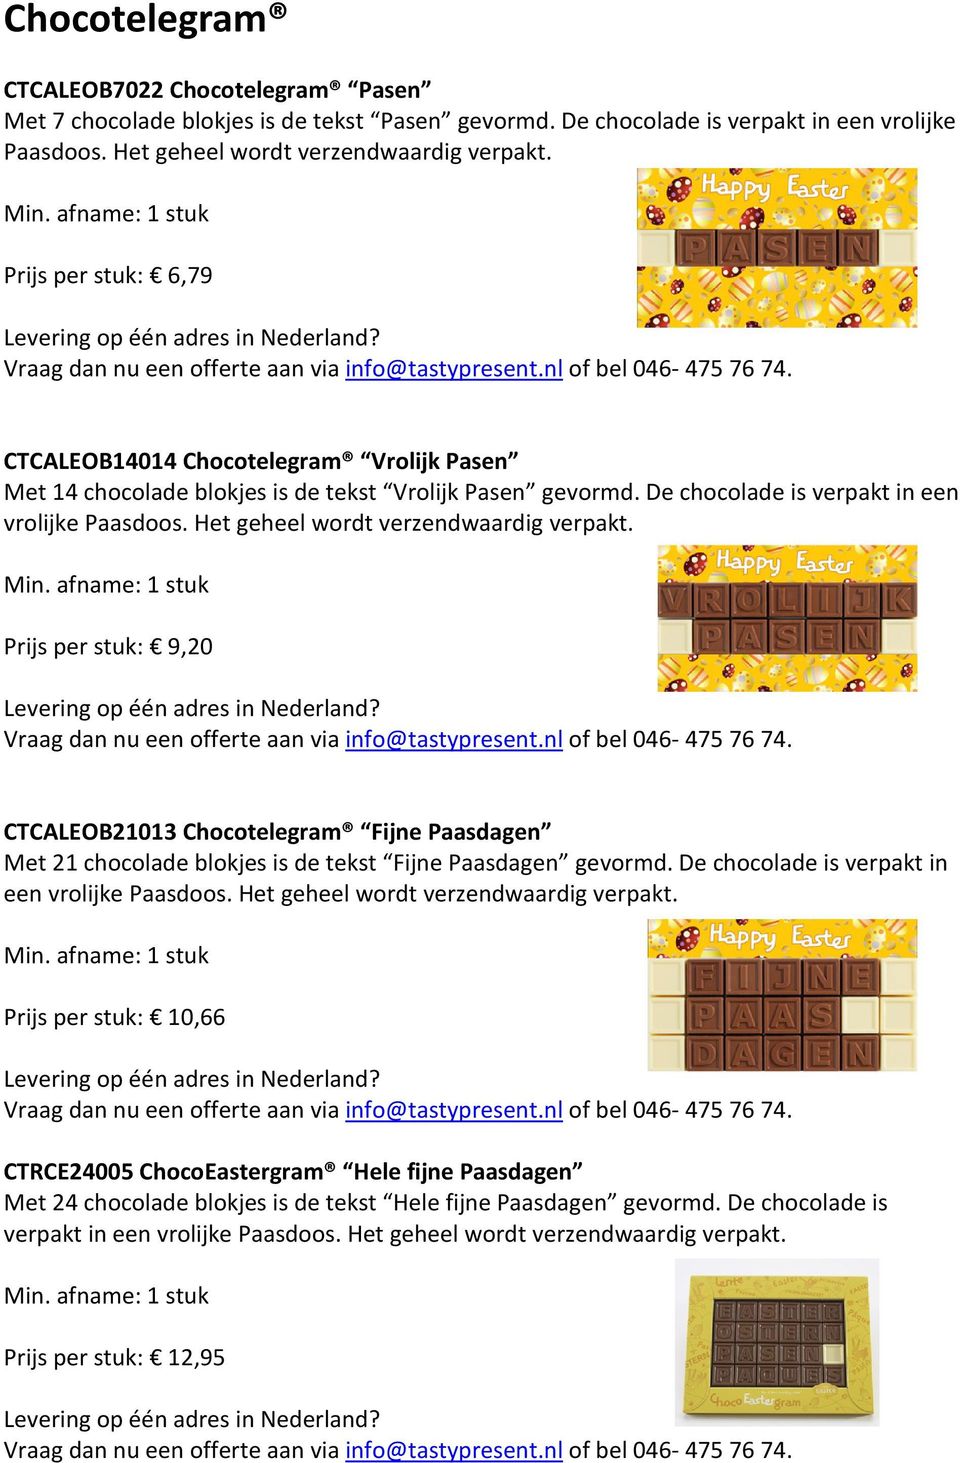 De chocolade is verpakt in een vrolijke Paasdoos. Het geheel wordt verzendwaardig verpakt. Prijs per stuk: 9,20 Vraag dan nu een offerte aan via info@tastypresent.nl of bel 046-475 76 74.